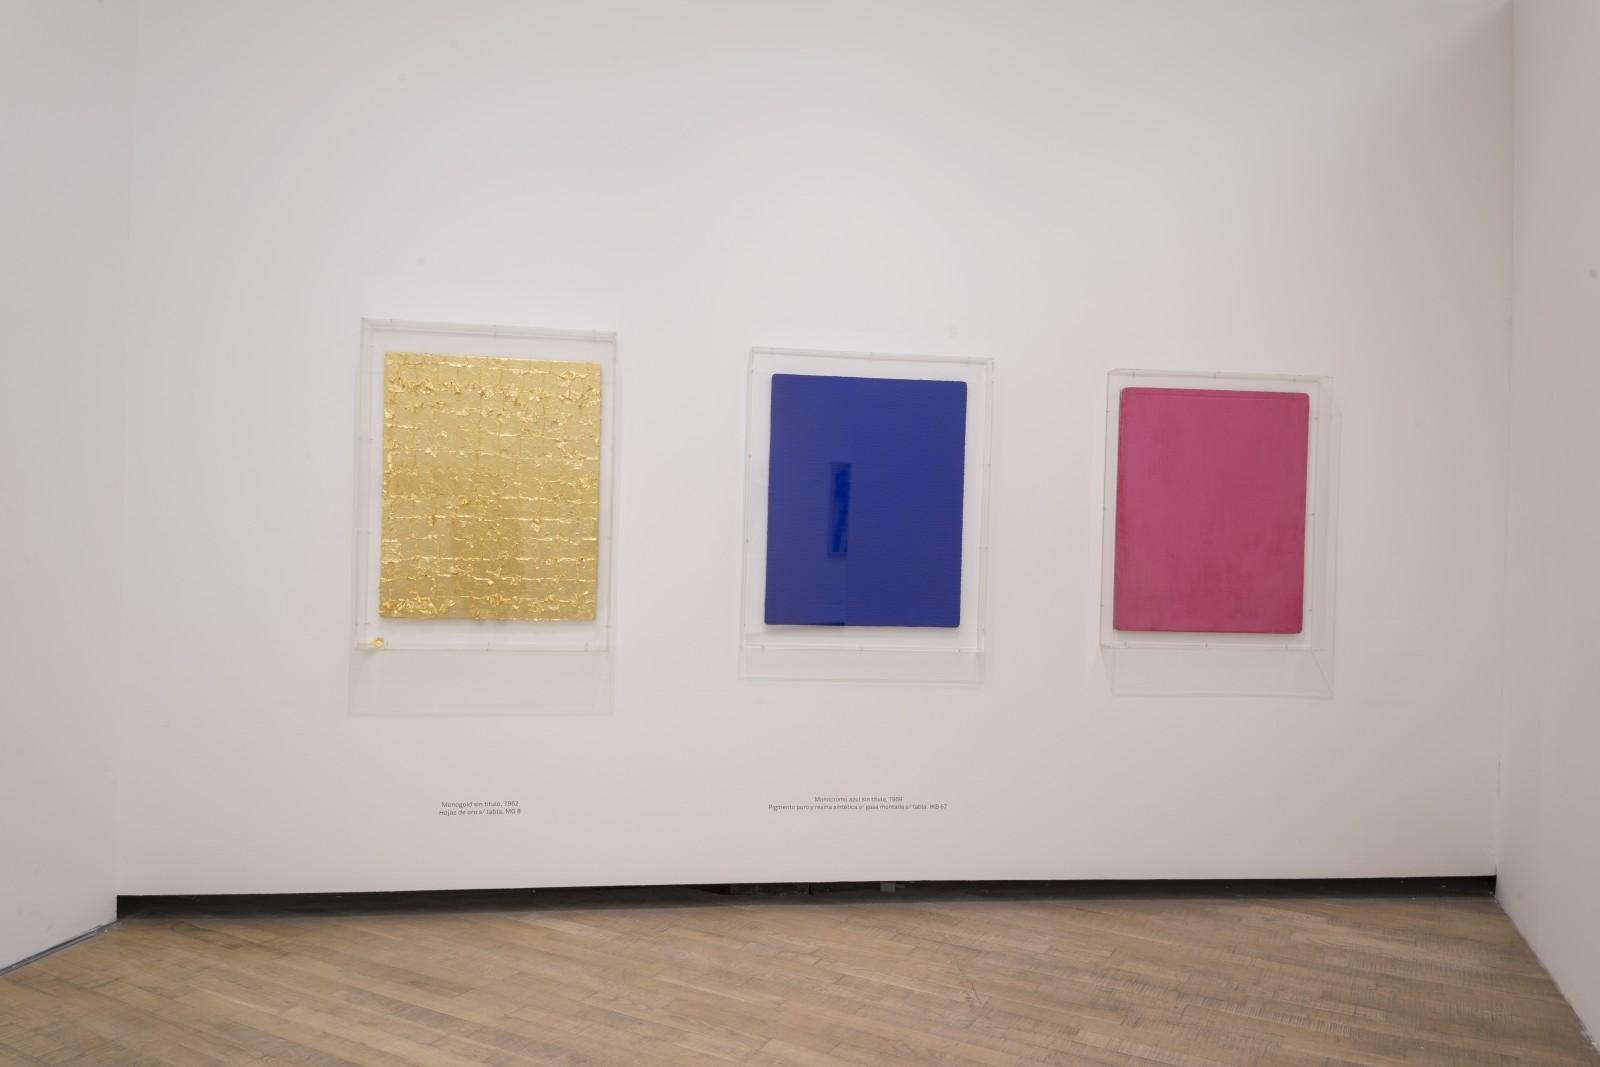 Vue de l'exposition "Yves Klein - Retrospectiva", PROA Fundación, 2017